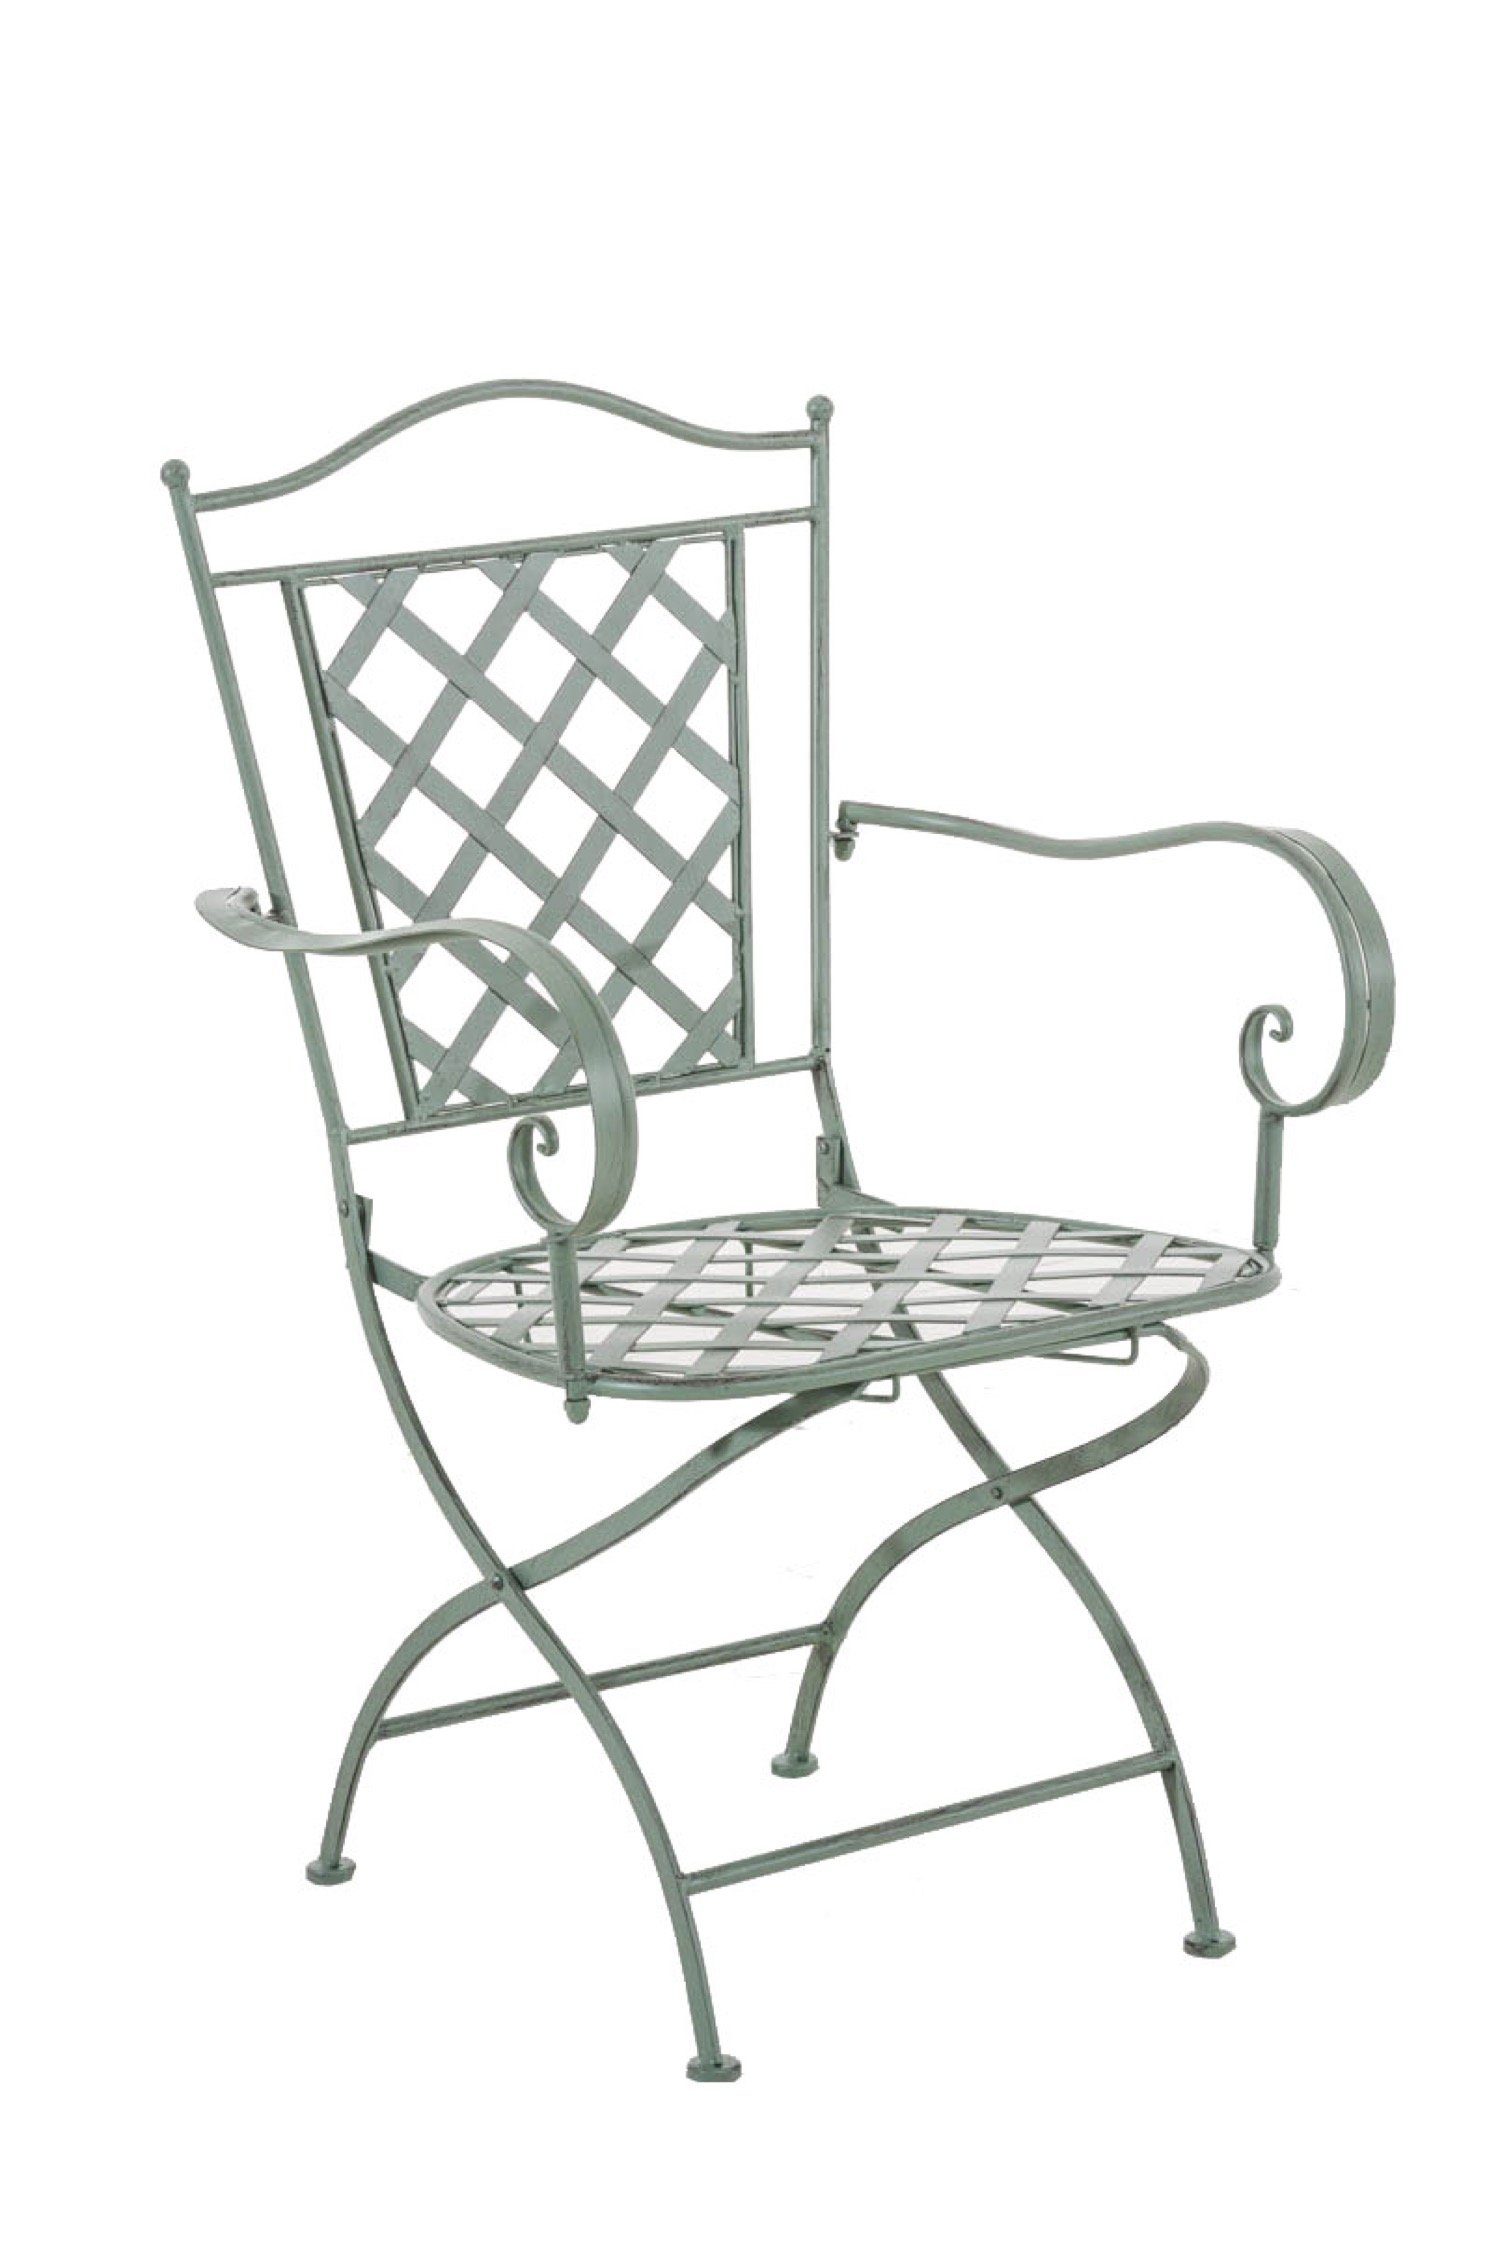 TPFGarden Gartenstuhl Athan - für Garten, Balkon, Terrasse - Farbe: antik-grün (Hochwertiger und stabiler Metallstuhl aus handgefertigtem Eisen, 1 St), Balkonstuhl, Bistrostuhl - Maße (TxBxH): 51 x 56 x 93cm